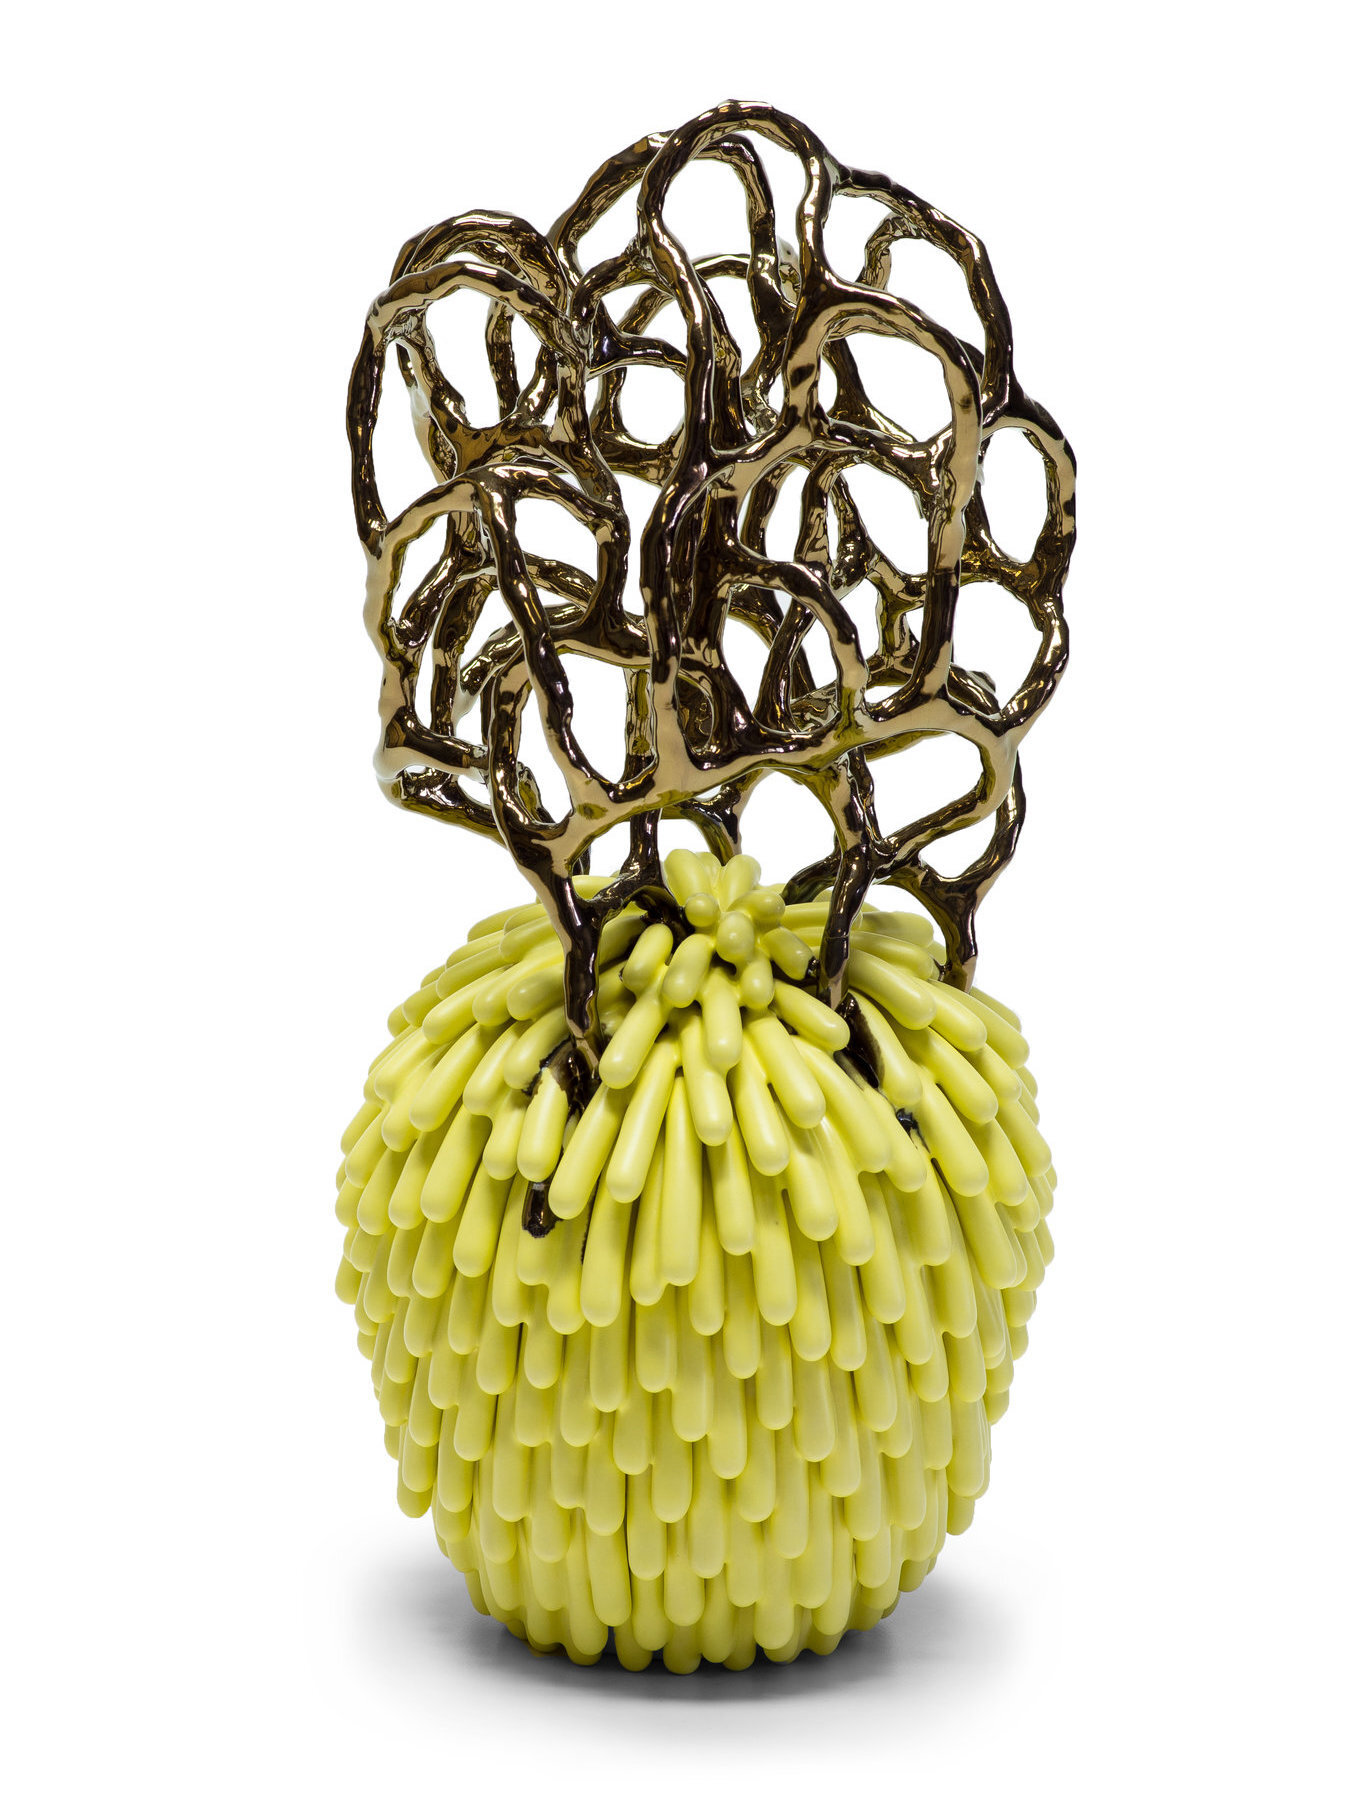    Yellow Pineapple  , 12.5” x 6.5” x 6.5”, ceramic 